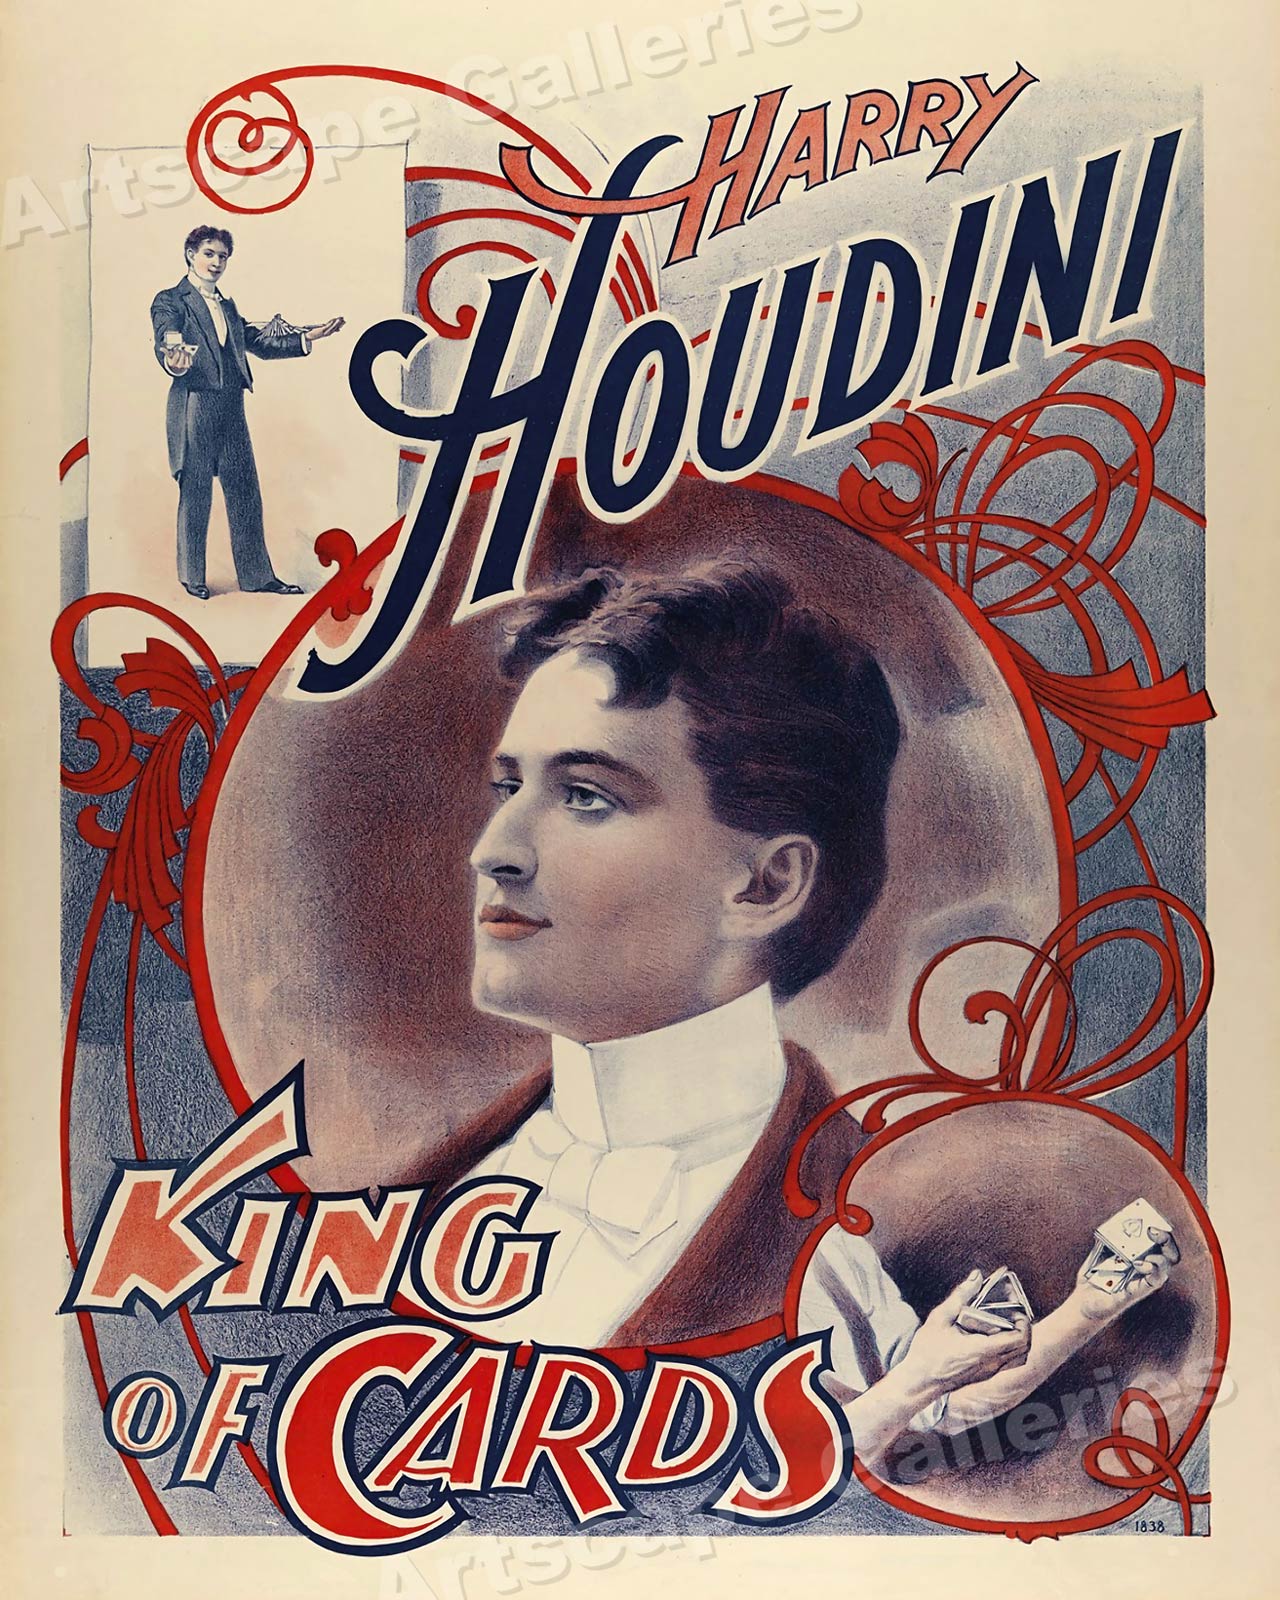 houdini poster original